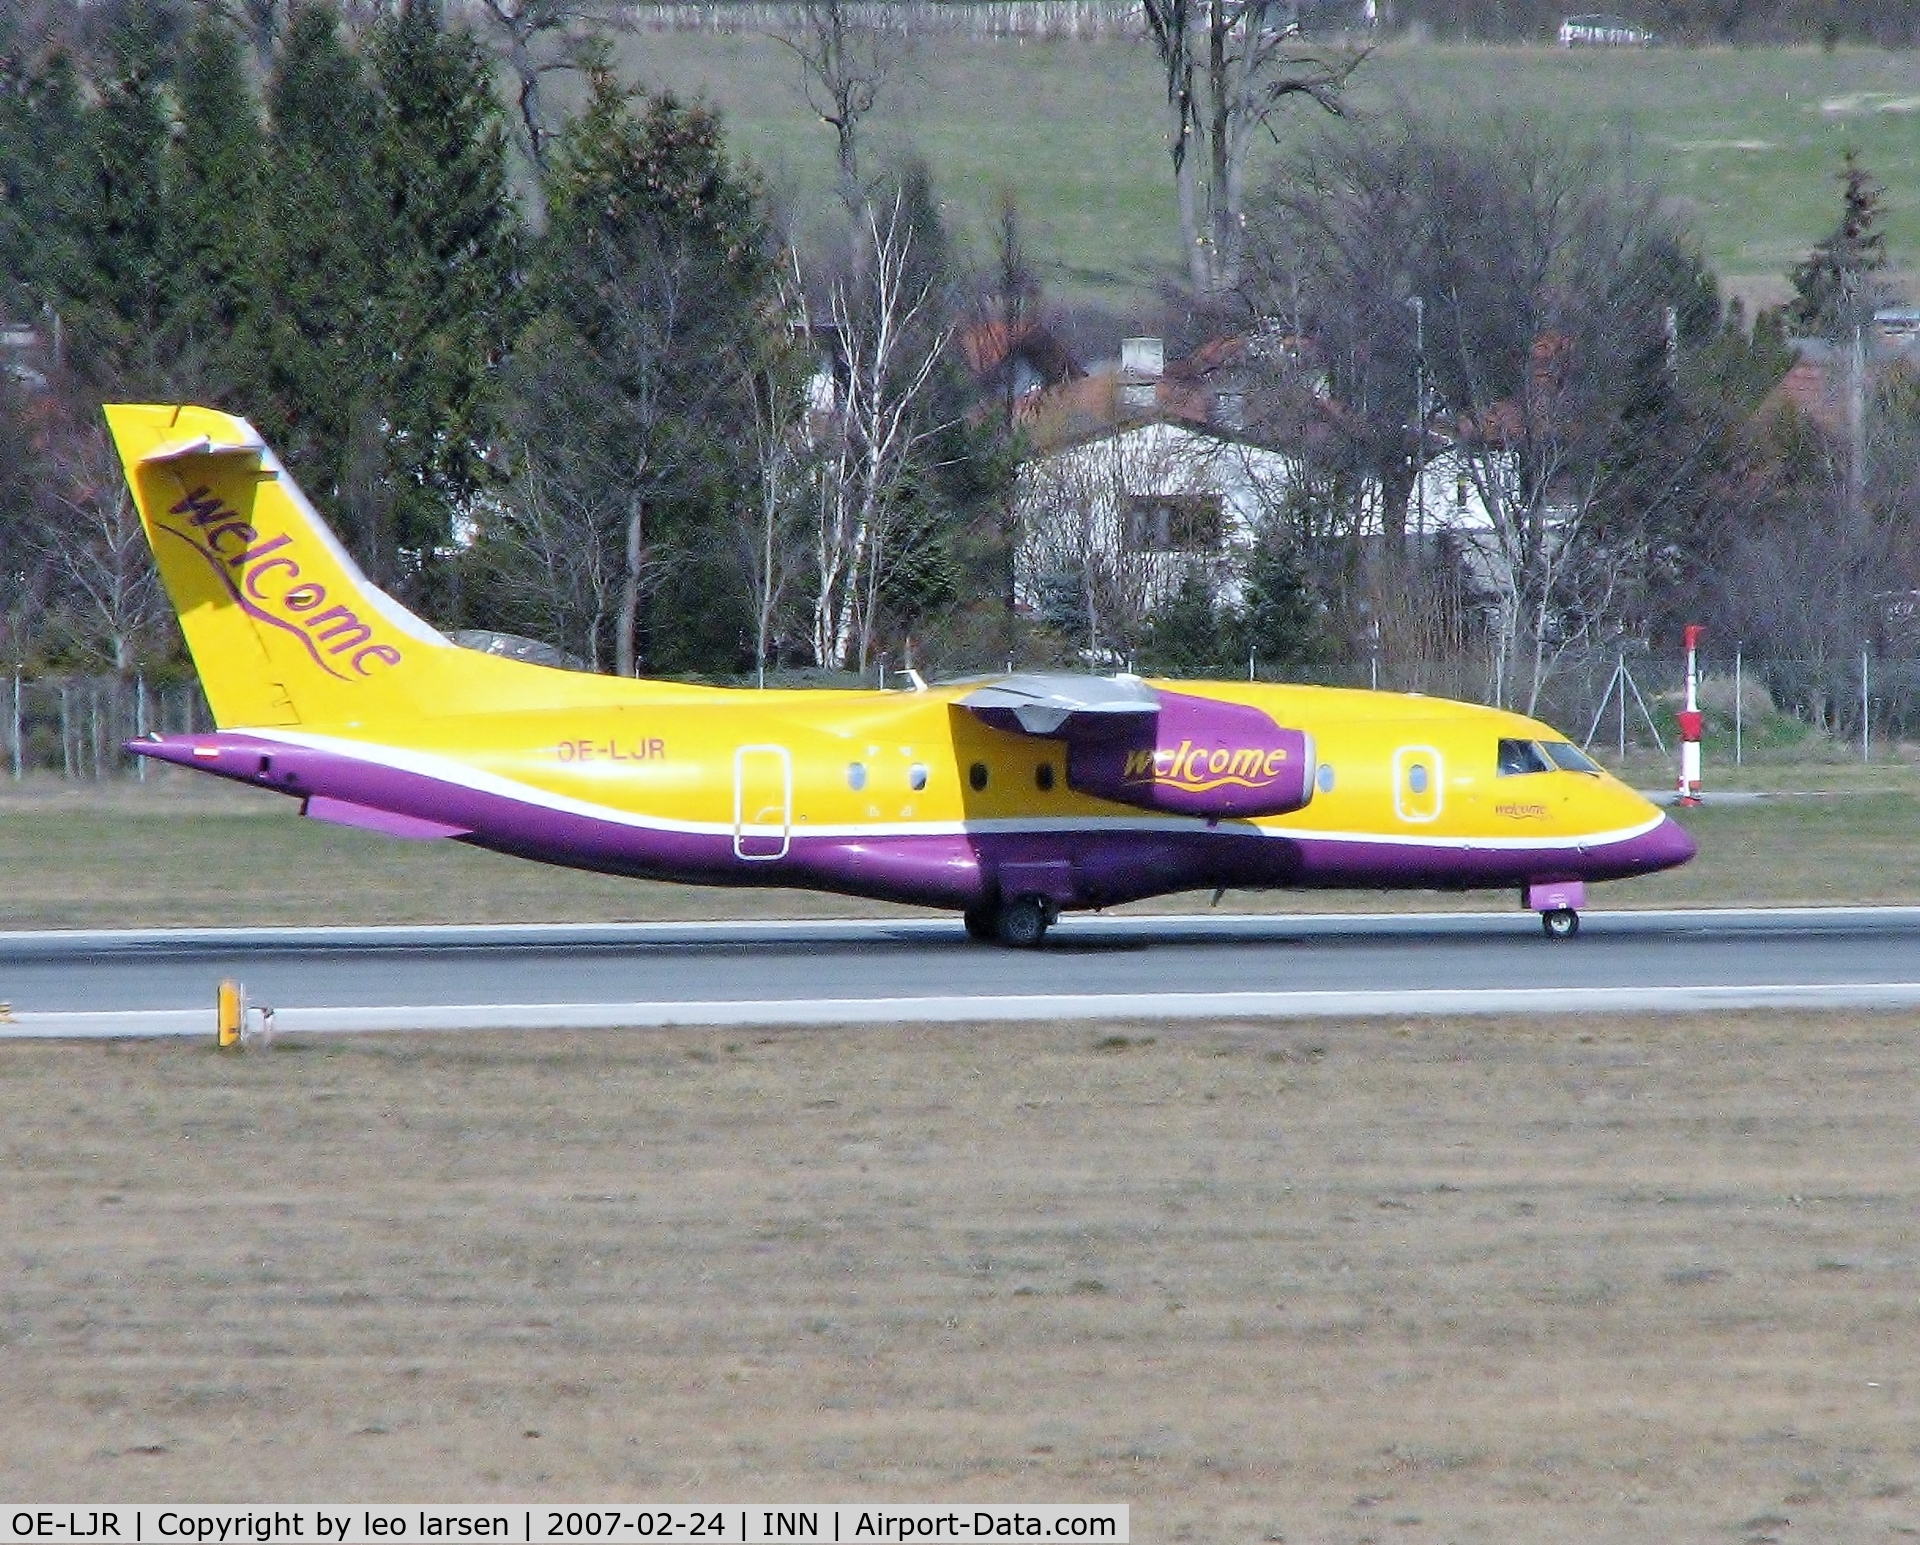 OE-LJR, 2001 Dornier 328-310 C/N 3213, Innsbruck 24.2.07